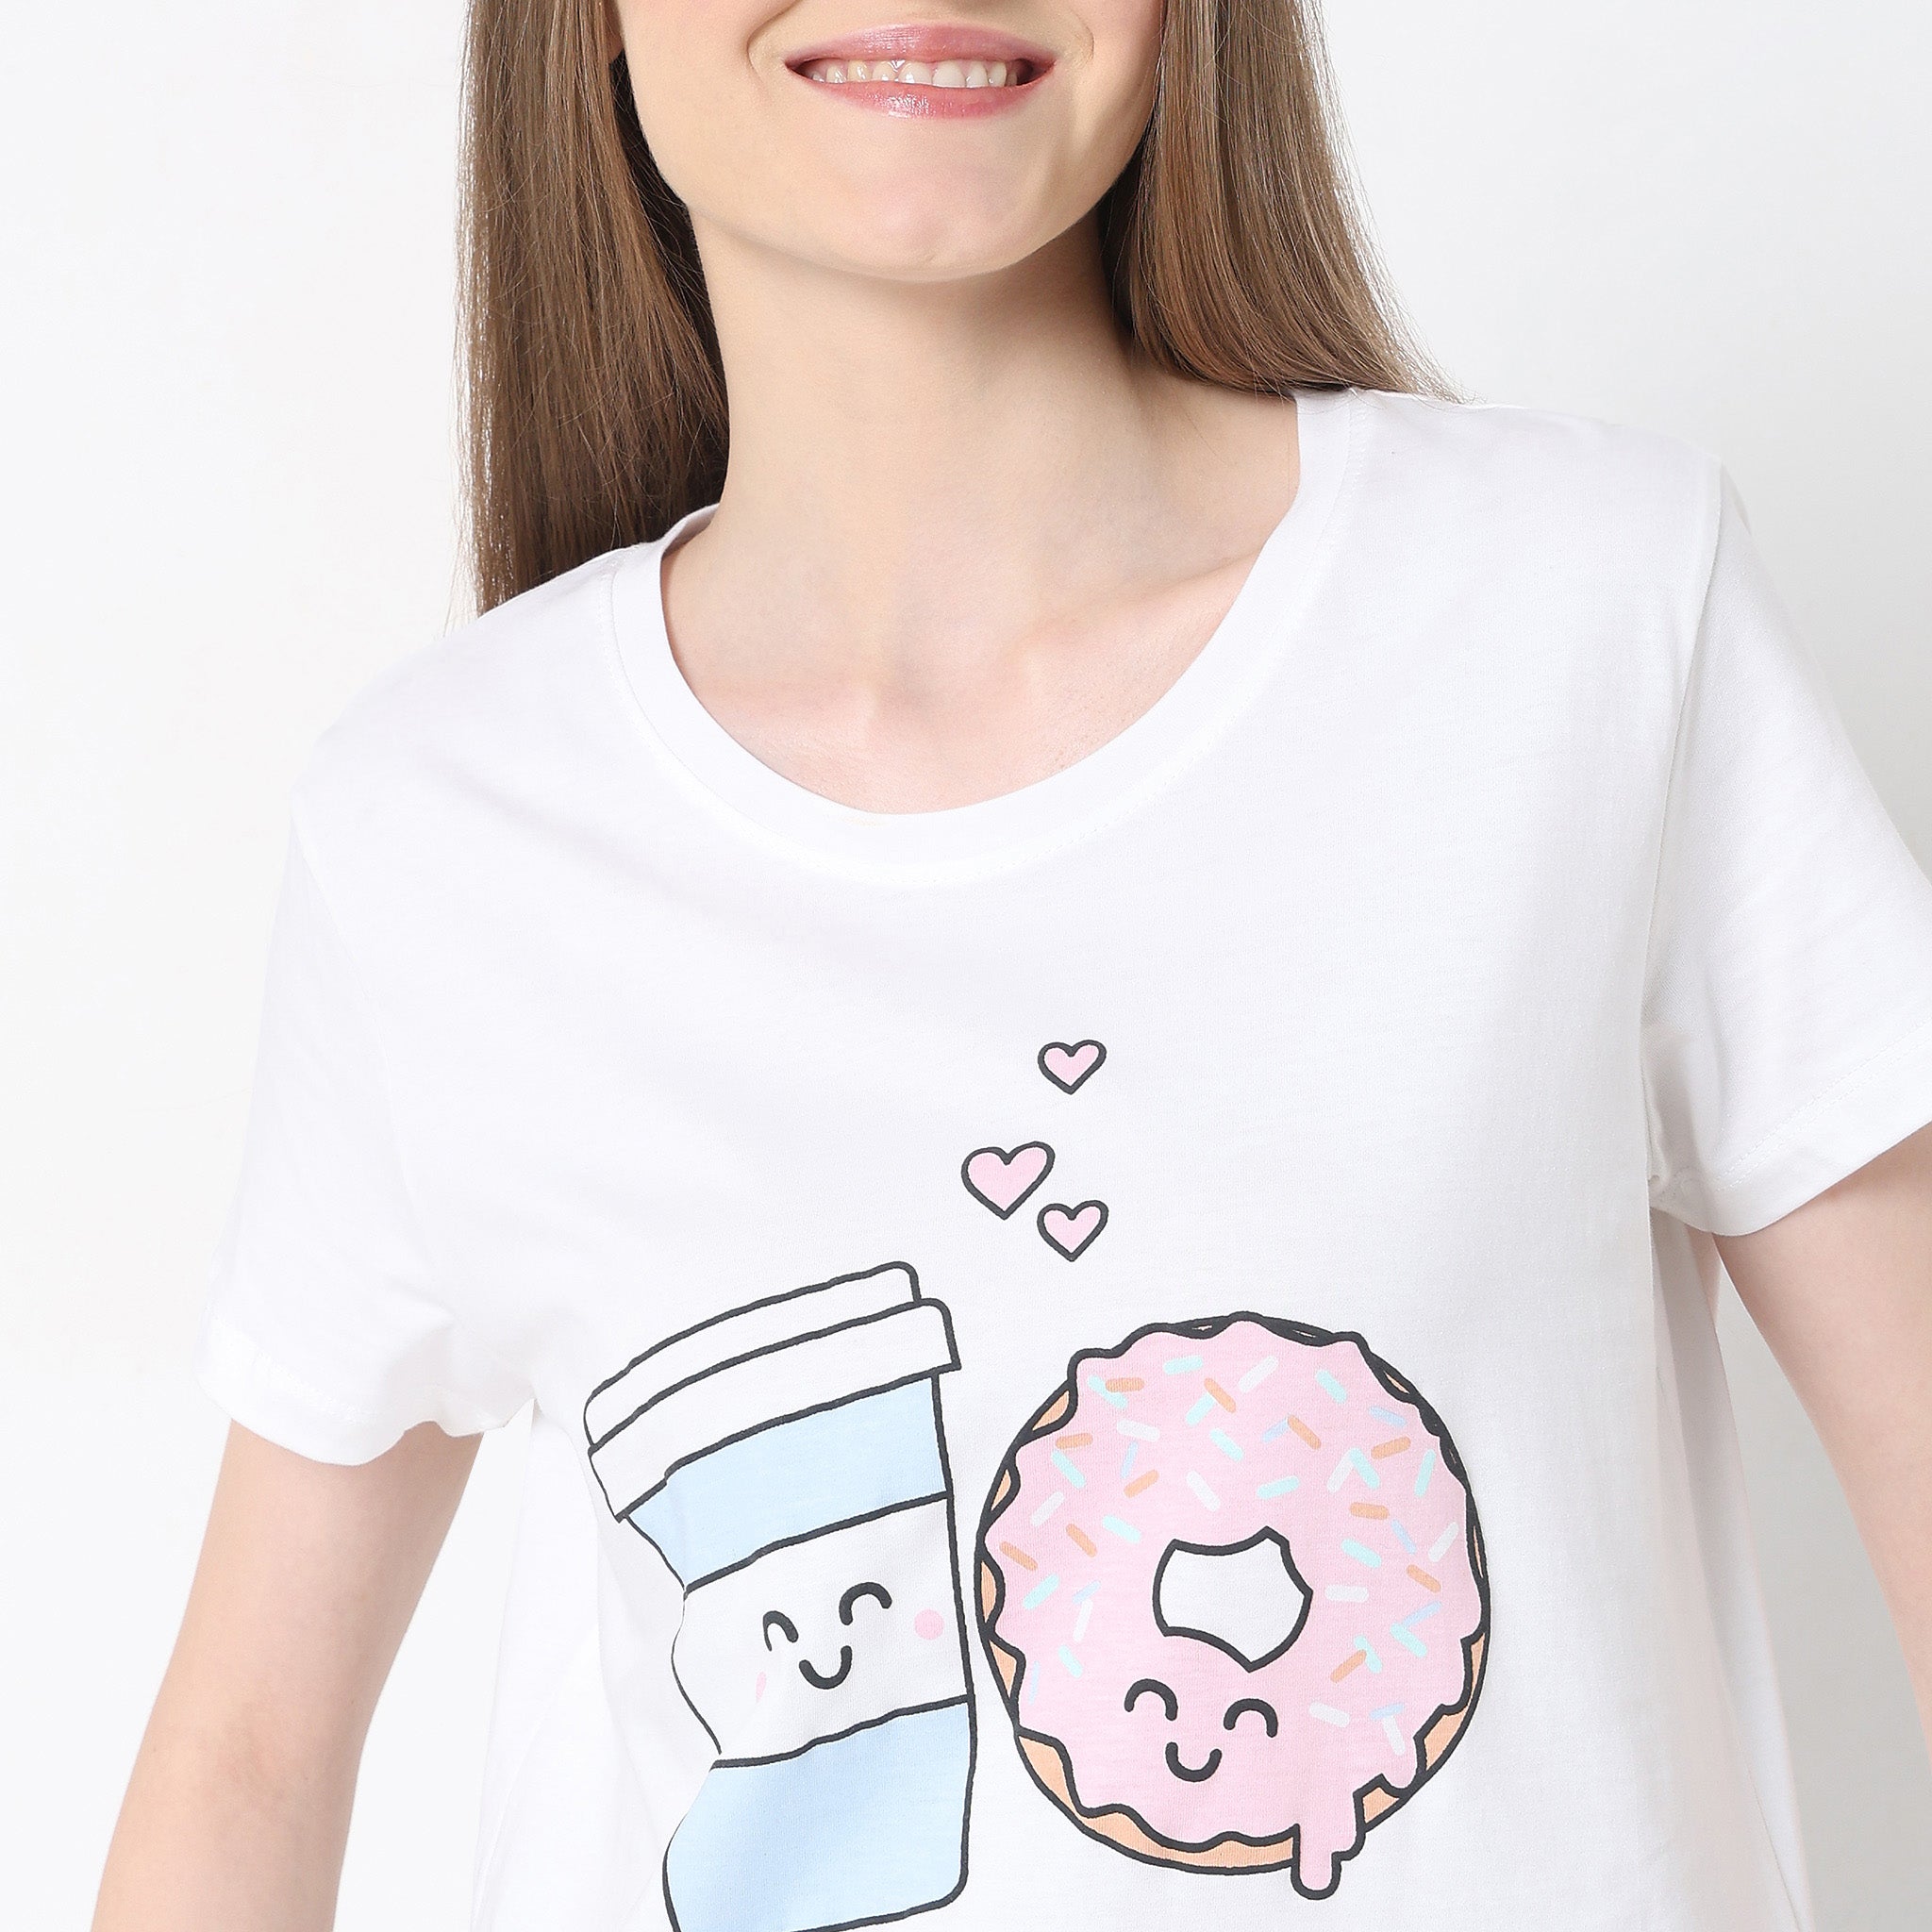 Regular Fit Printed T-Shirt with Pyjama Set